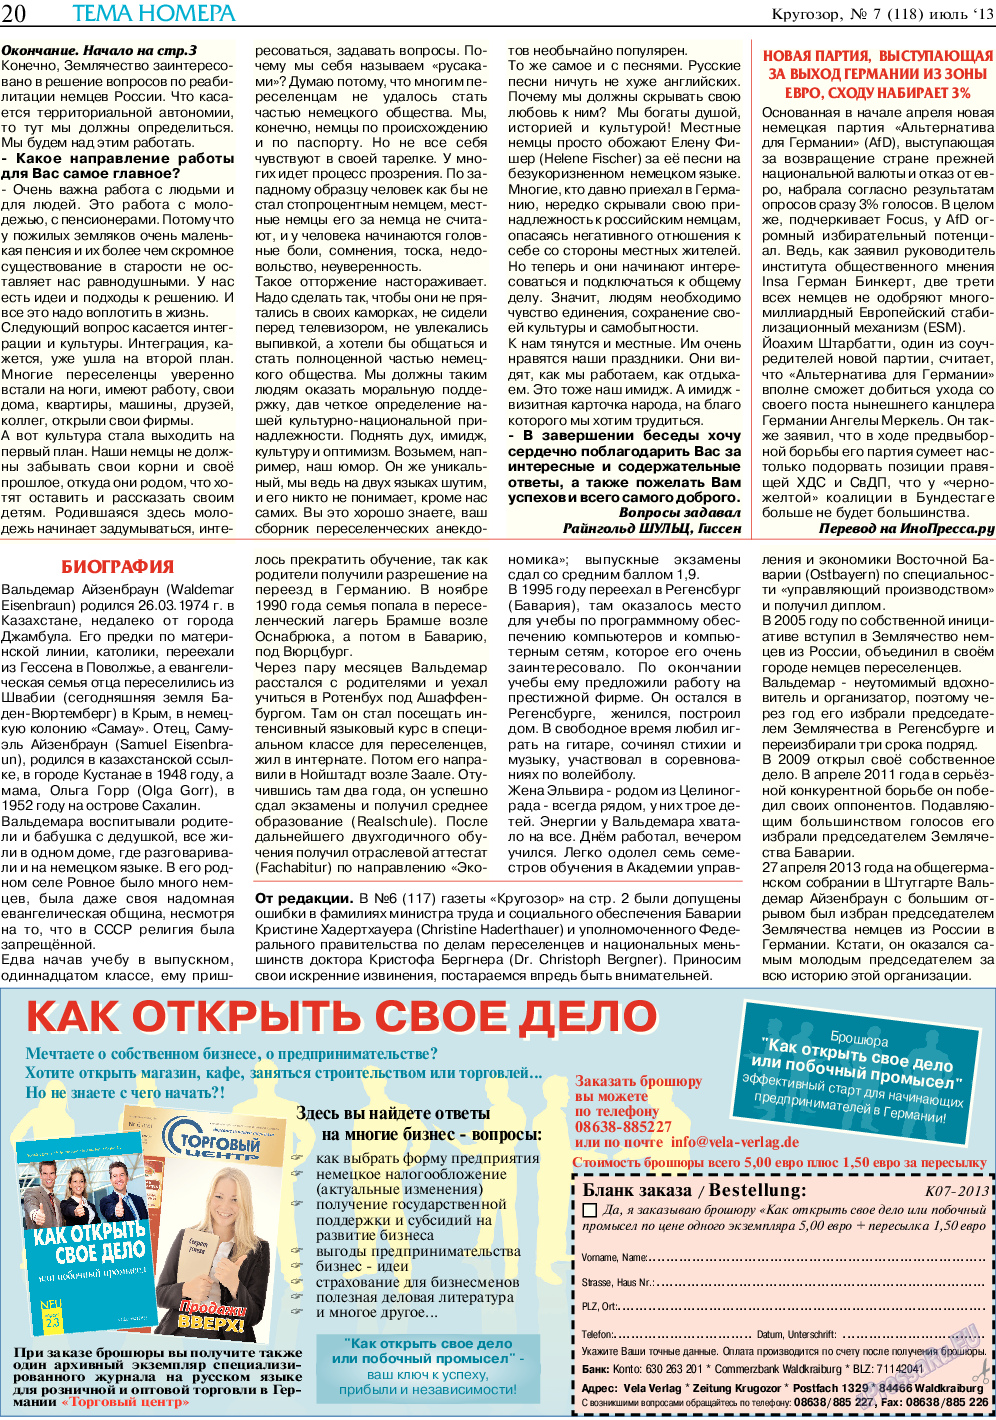 Кругозор, газета. 2013 №7 стр.20